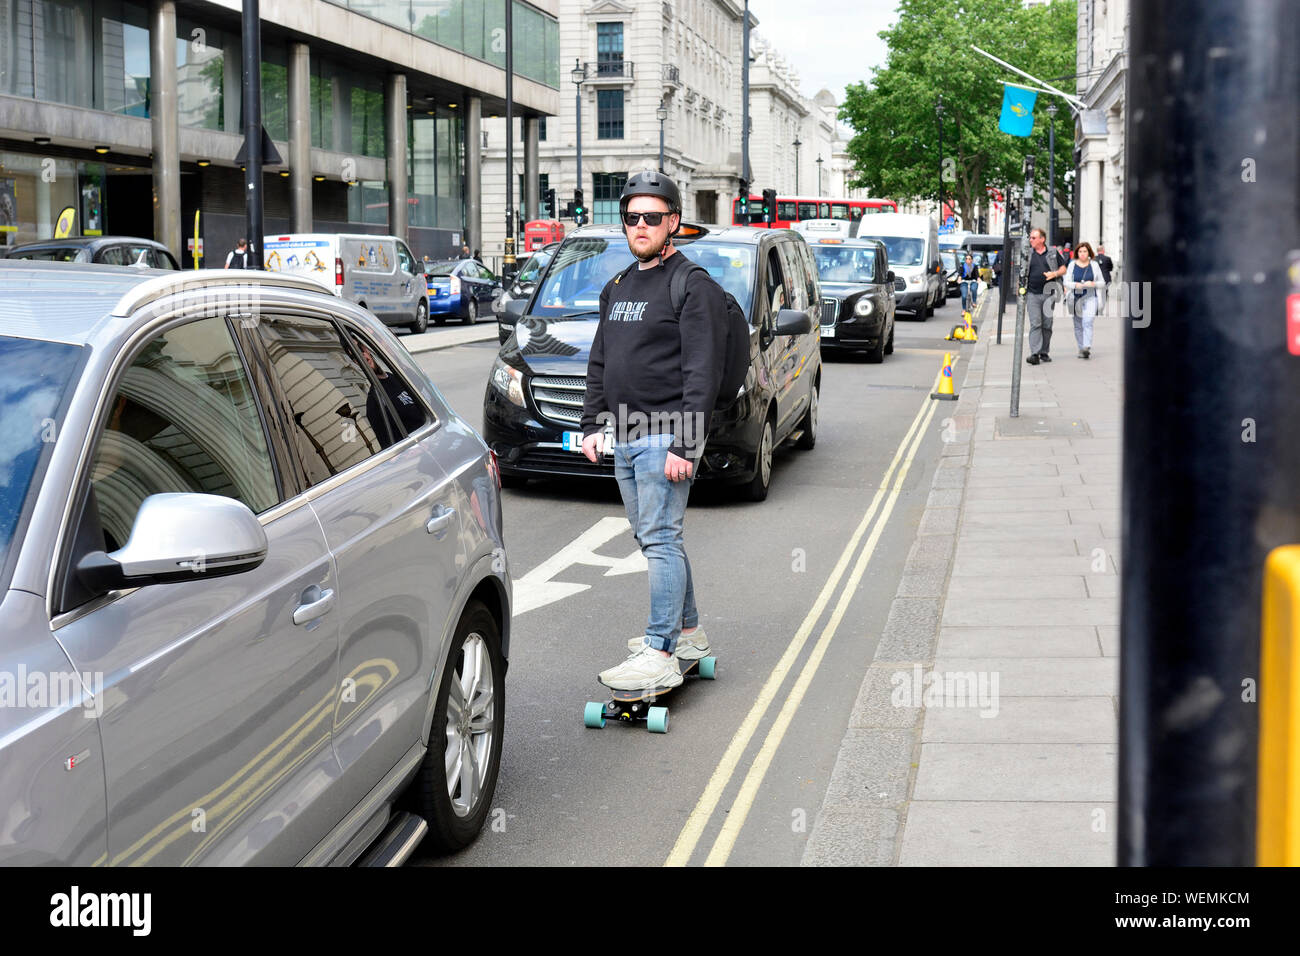 Londra, Inghilterra, Regno Unito. L'uomo su uno skateboard nel traffico Foto Stock